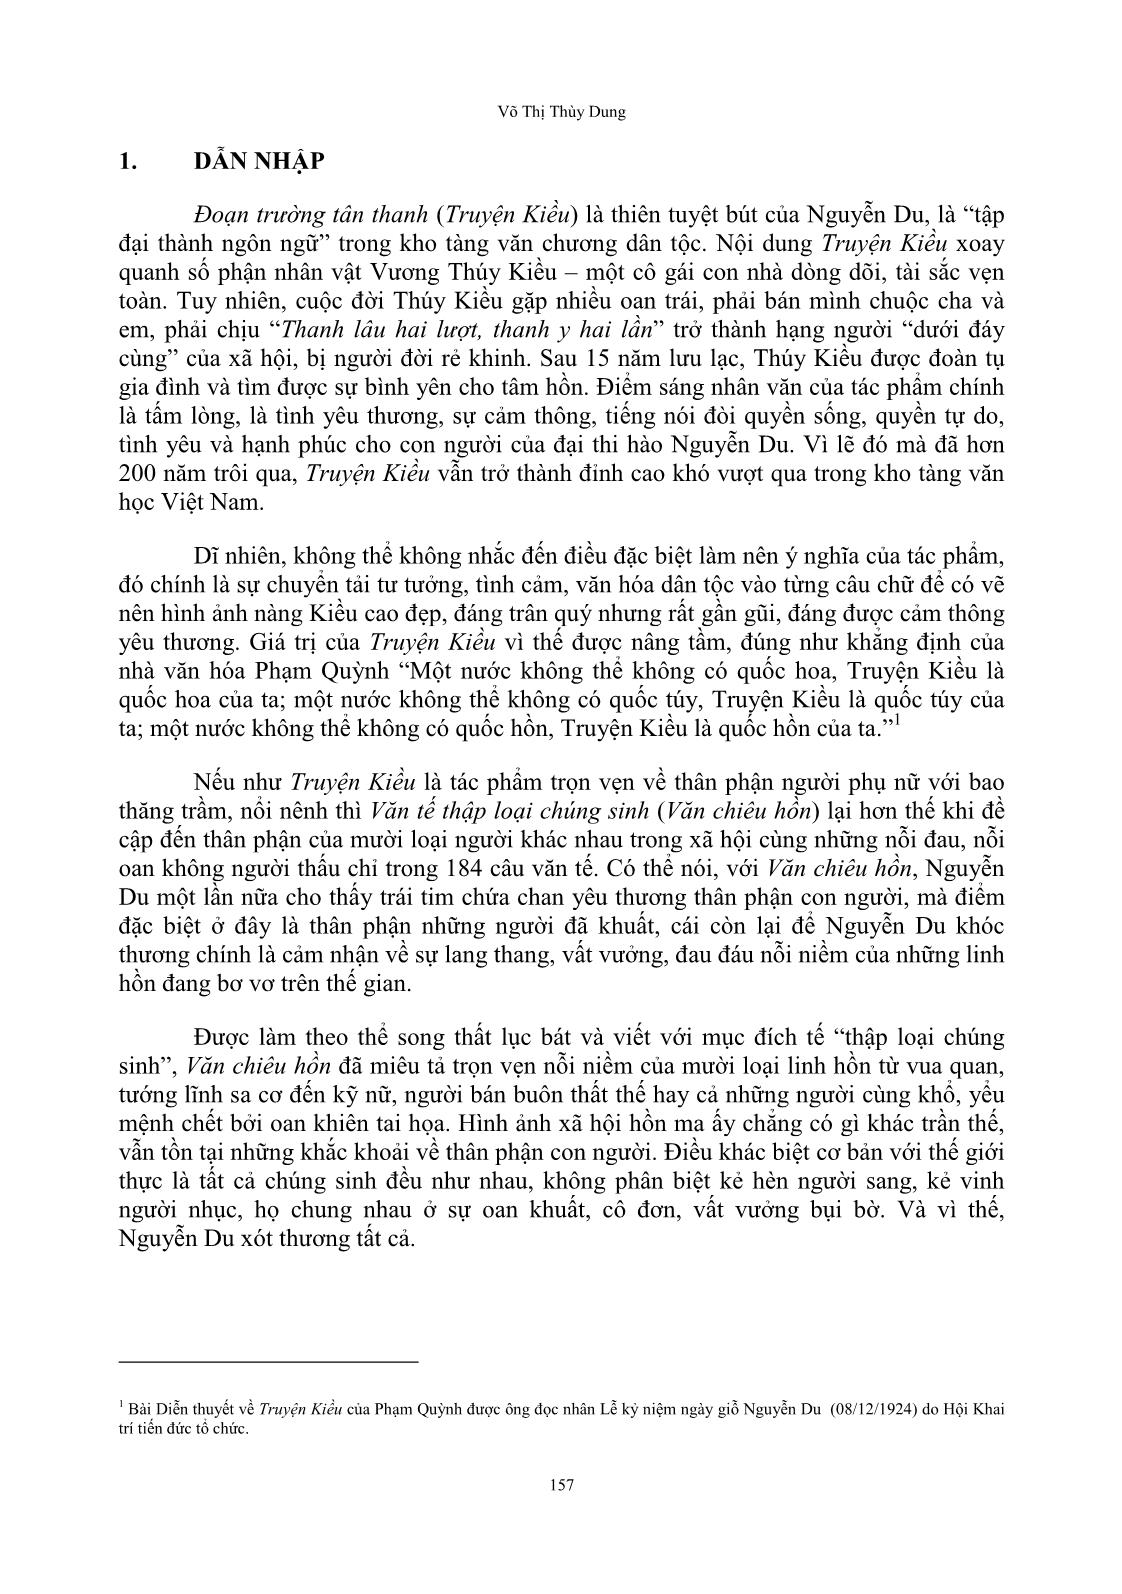 Tín ngưỡng dân gian trong truyện kiều và văn tế thập loại chúng sinh (văn chiêu hồn) của Nguyễn Du trang 3